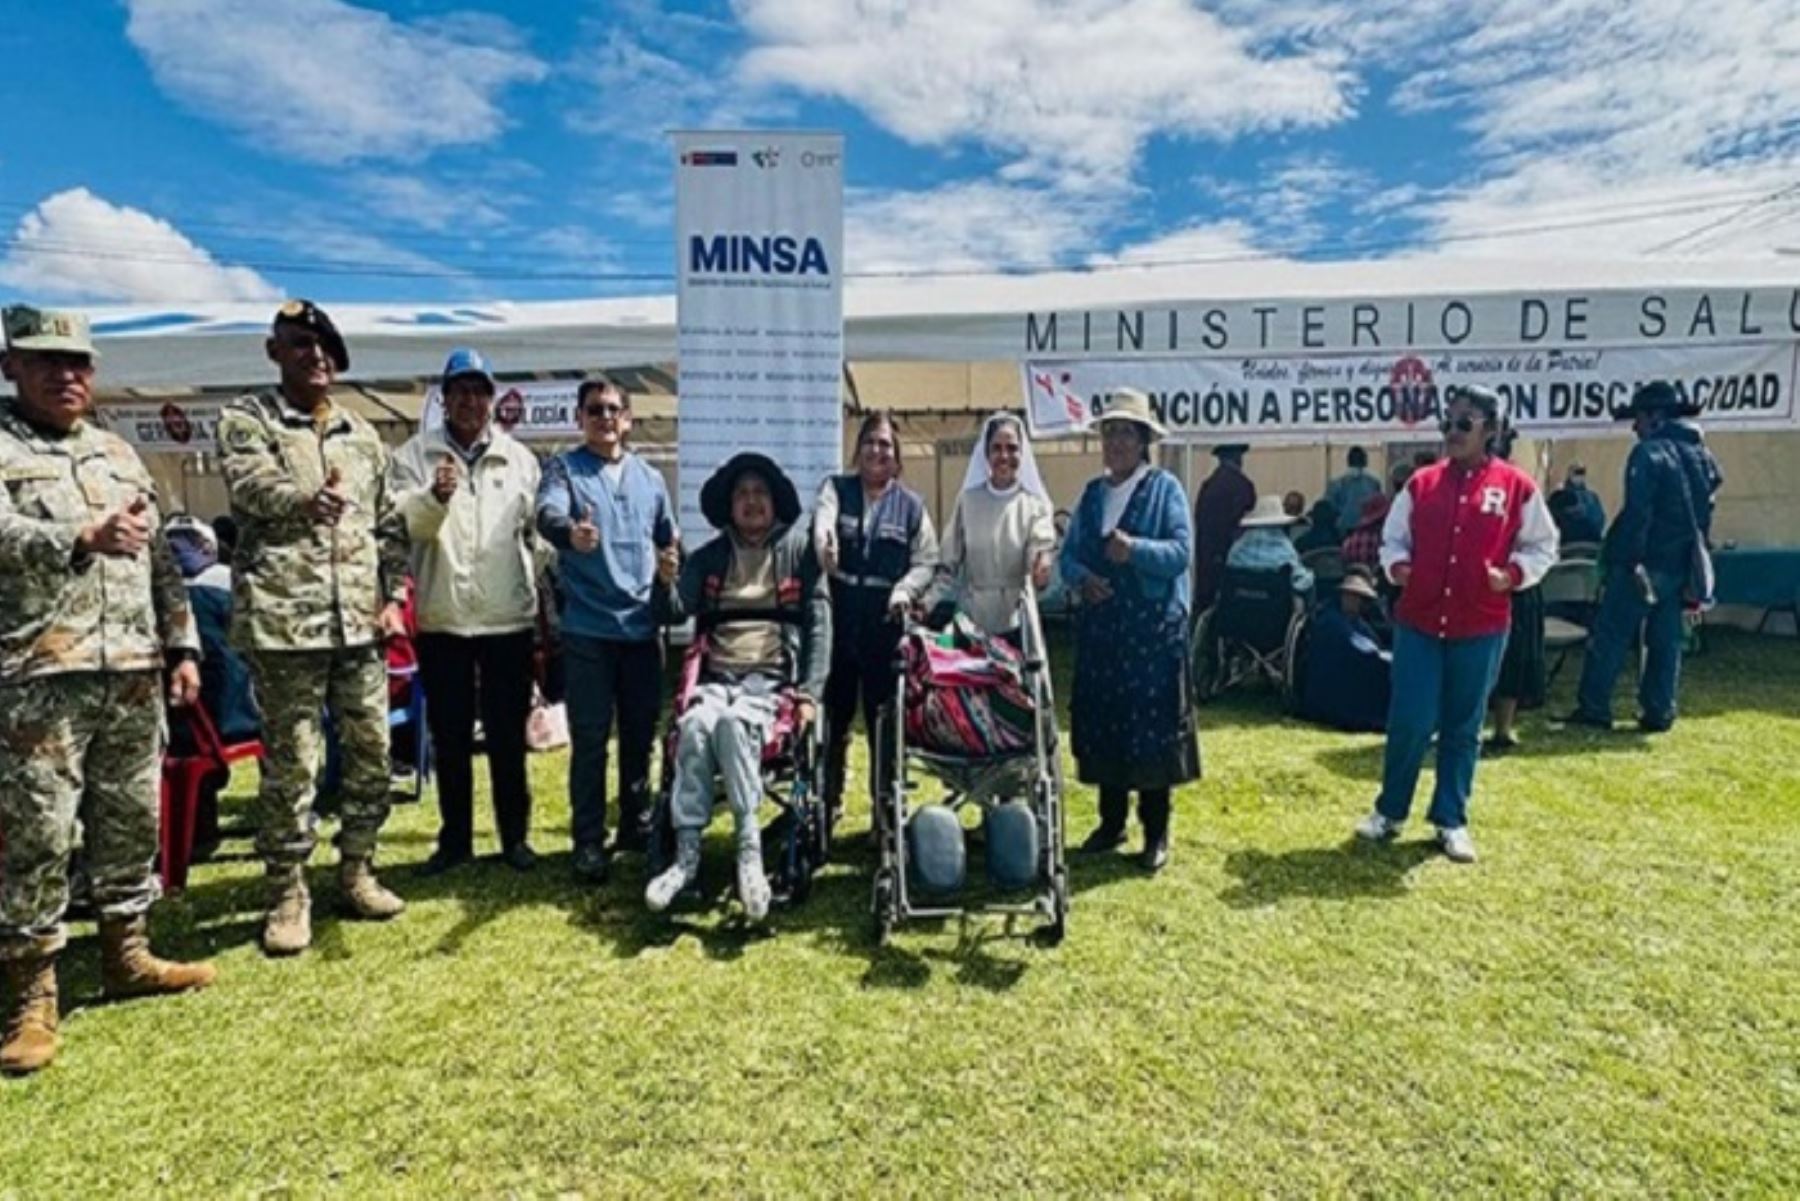 パスコとプーノでの健康キャンペーンは、ペルー日本友好リハビリテーション協会によって開催されました。 情報